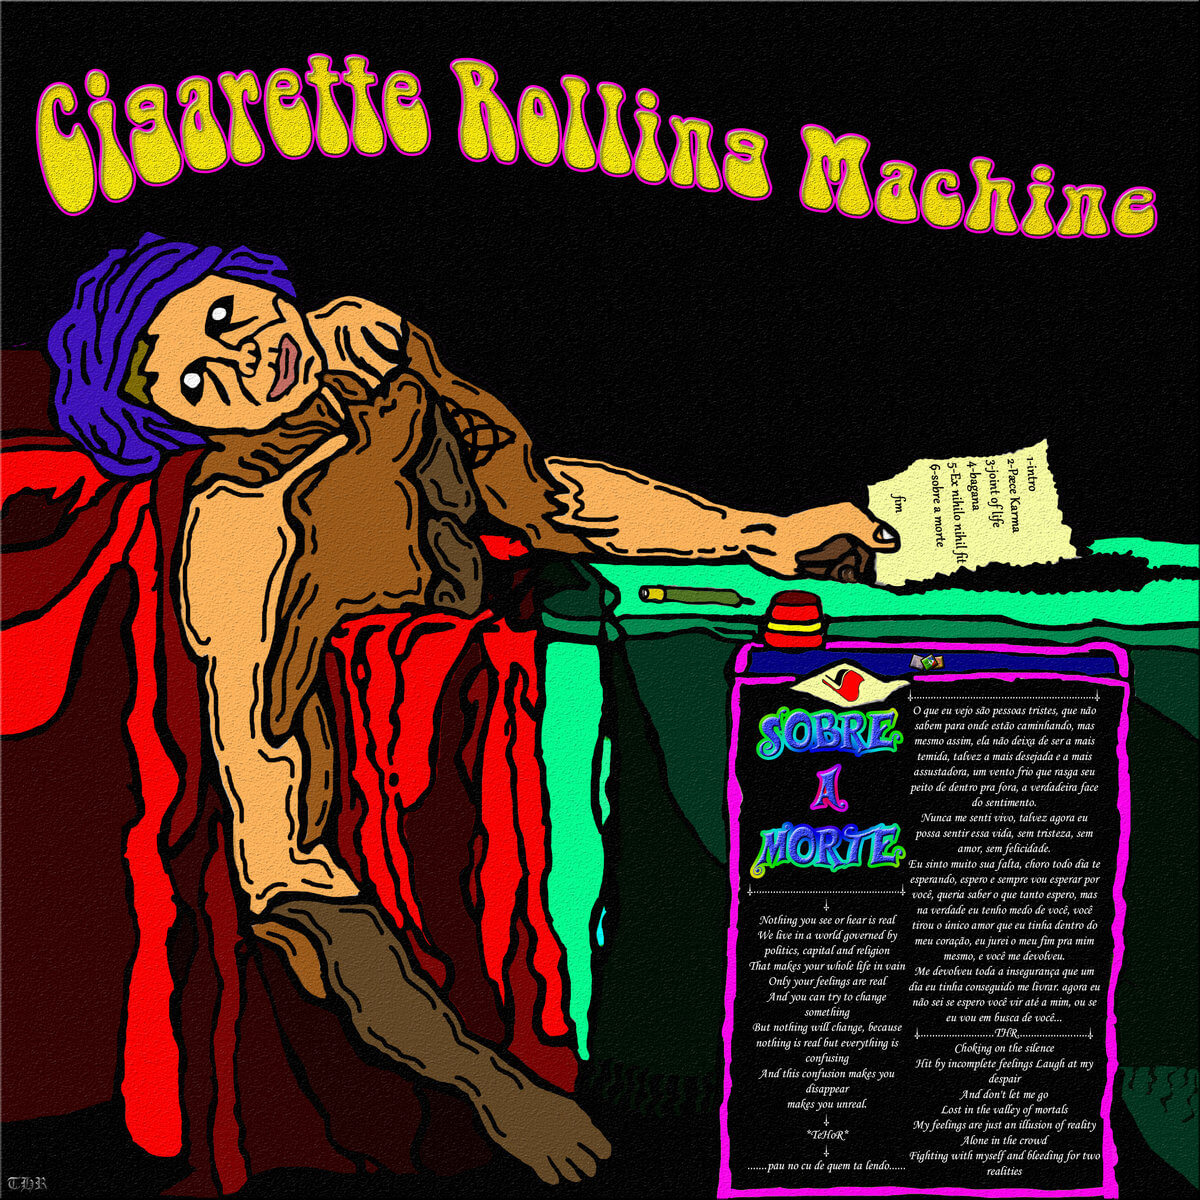 Ex Nihilo Nihil Fit – Cigarette Rolling Machine